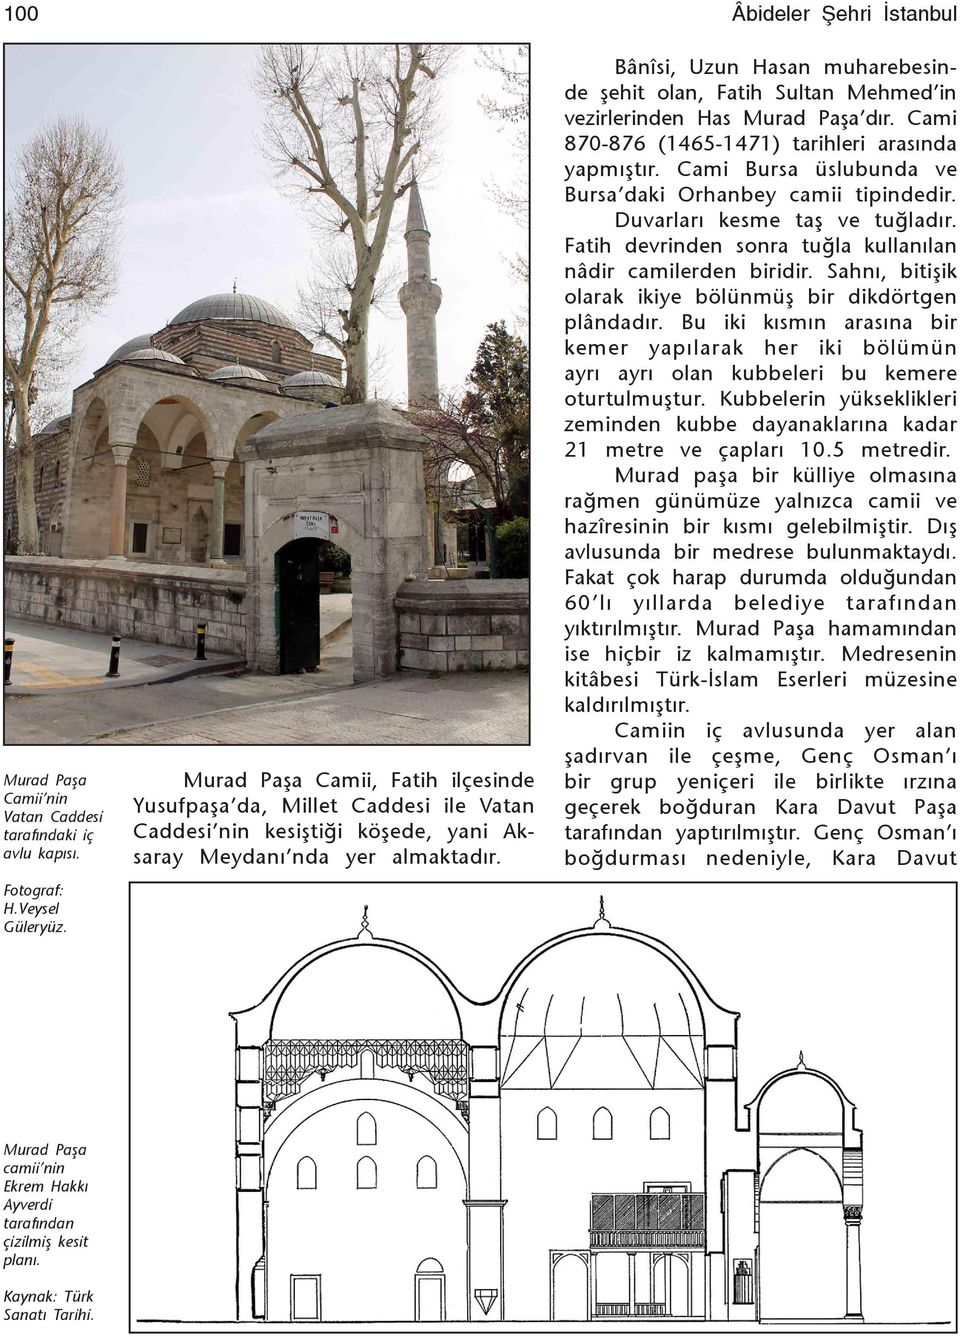 Cami Bursa üslubunda ve Bursa daki Orhanbey camii tipindedir. Duvarlarý kesme taş ve tuğladýr. Fatih devrinden sonra tuğla kullanýlan nâdir camilerden biridir.